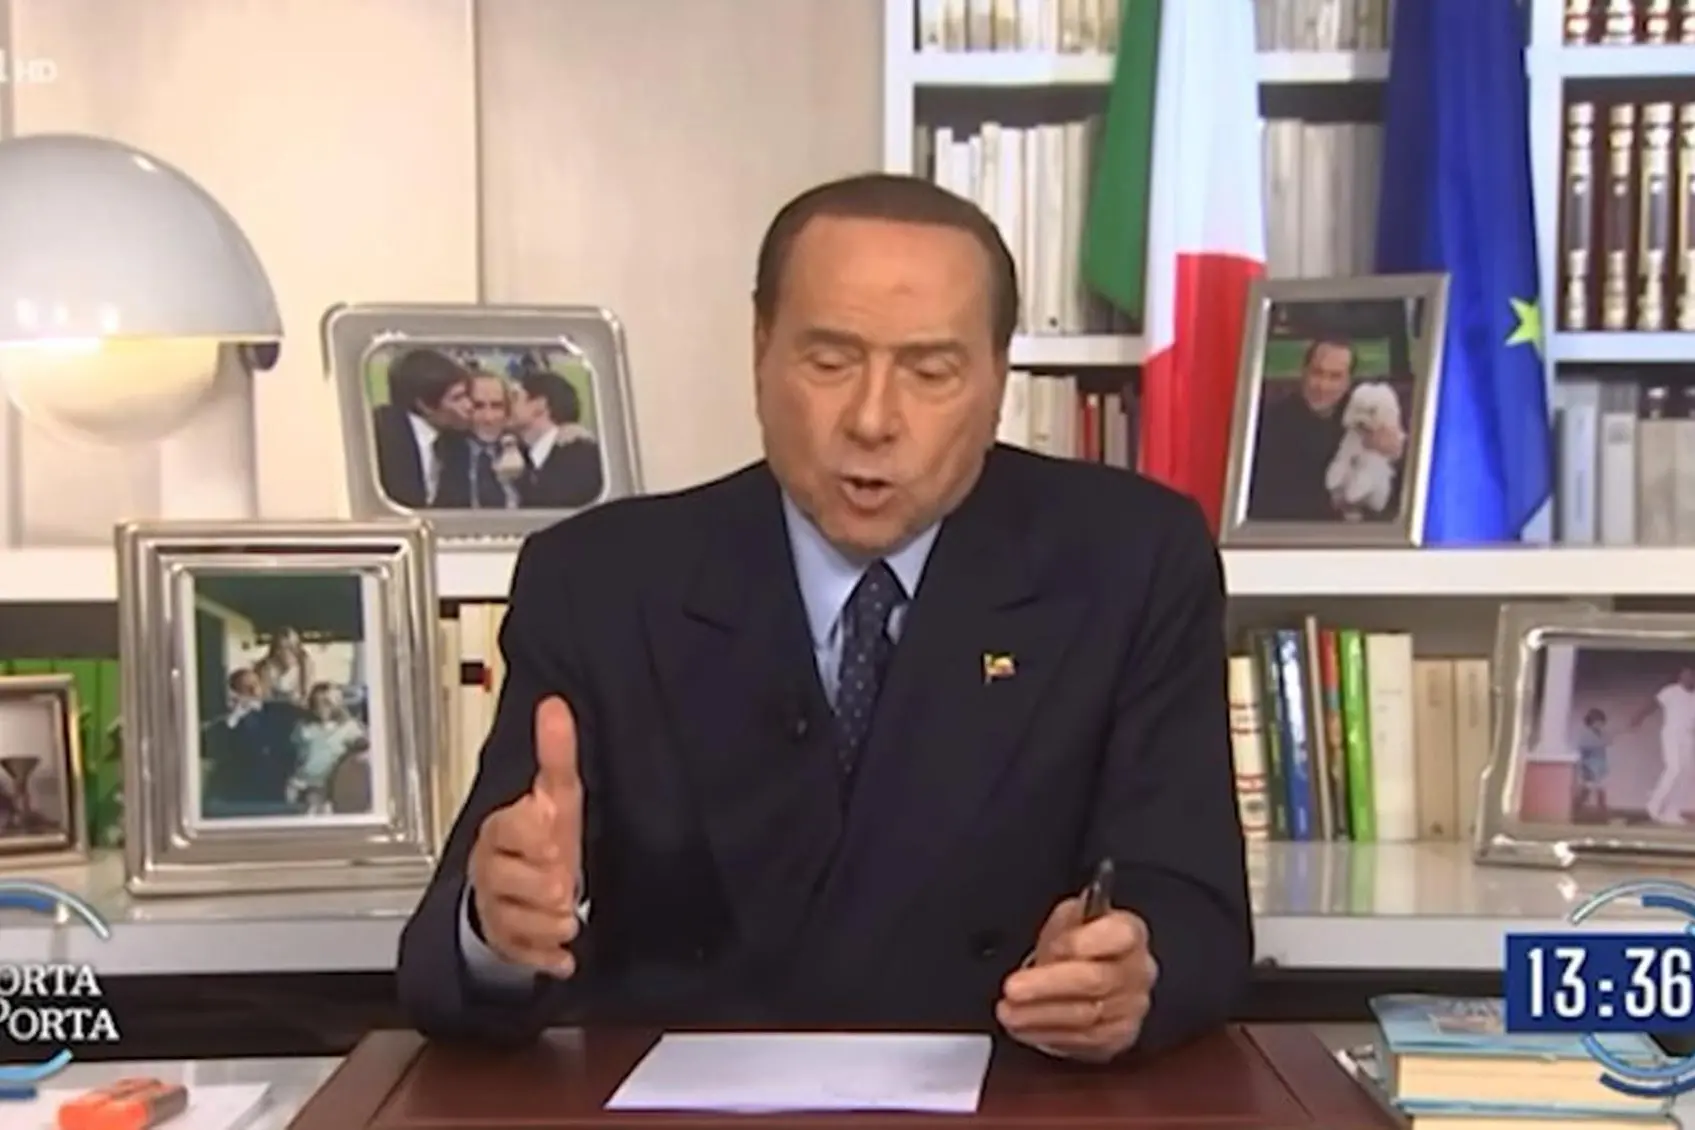 西尔维奥·贝卢斯科尼 (Silvio Berlusconi) 在 Porta a Porta (Ansa)